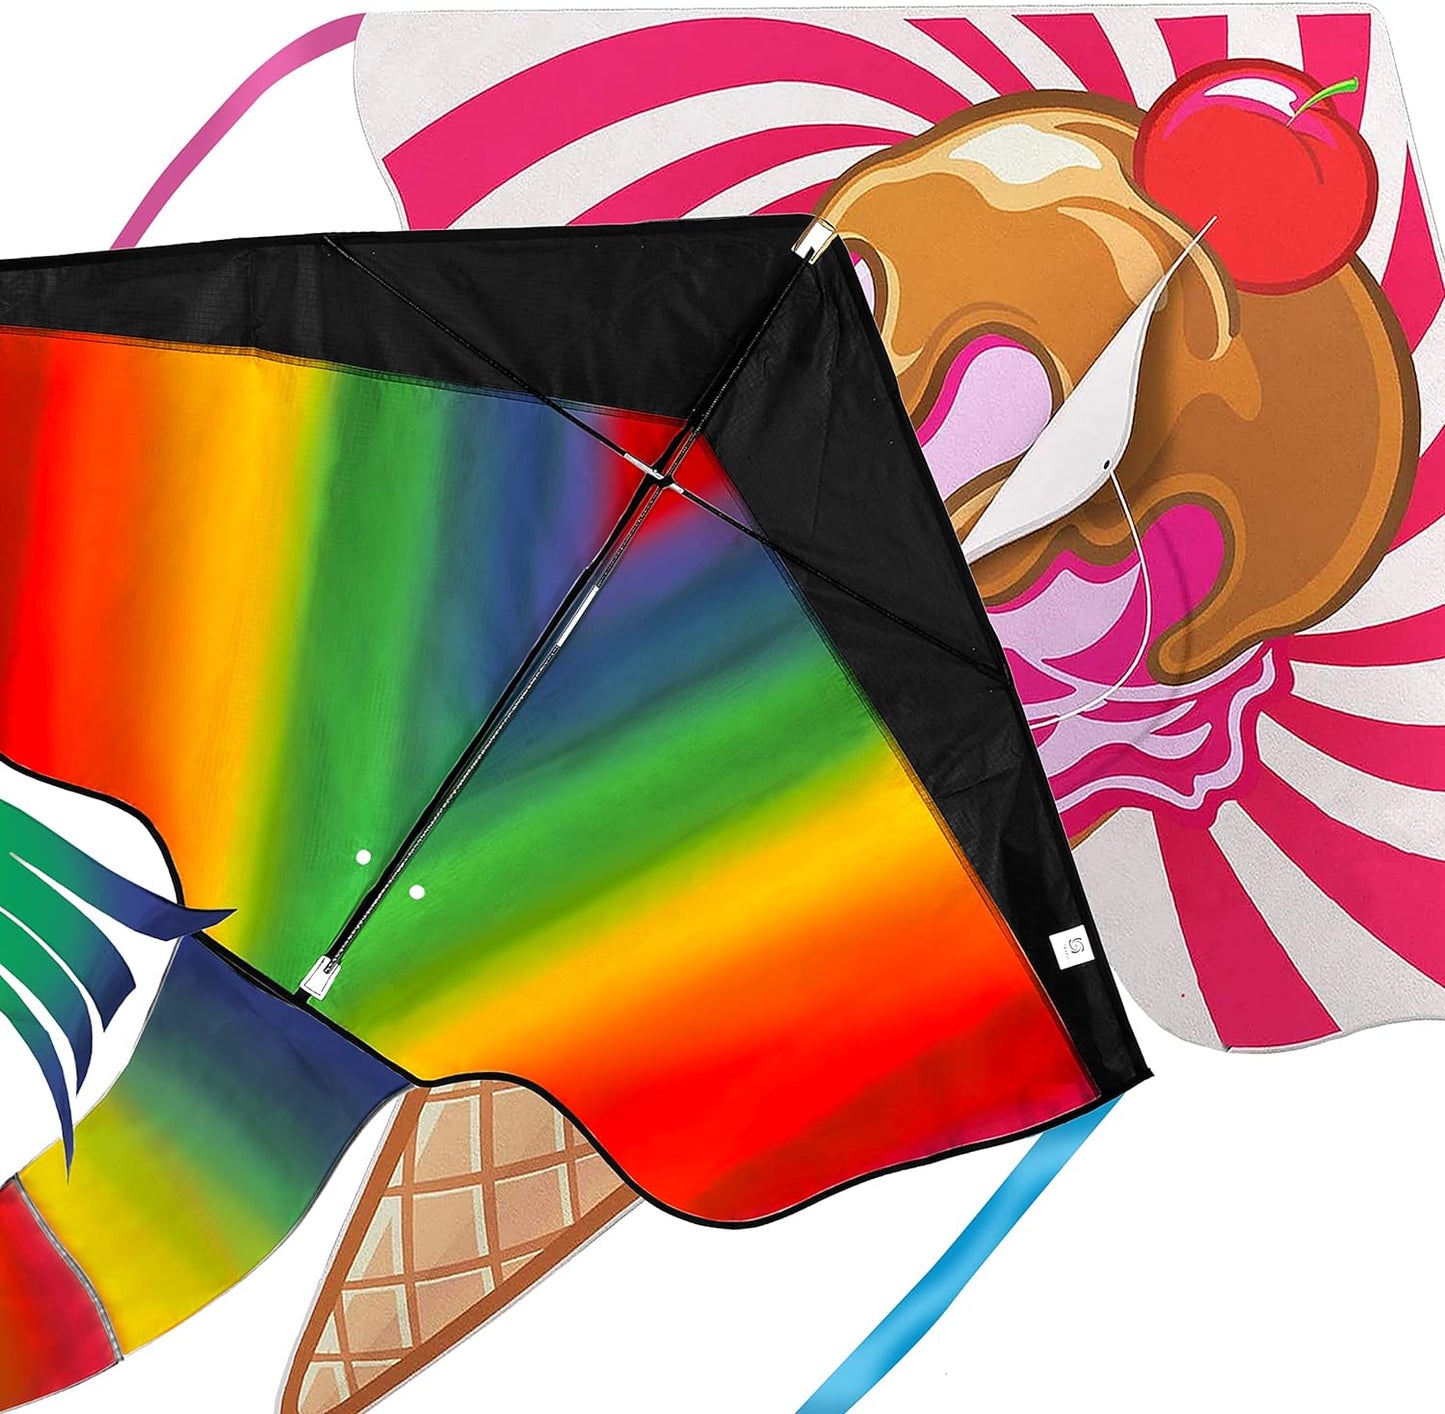 Rainbow Kite for Kids & Kites for Adults Easy to Fly, Kites for Kids Ages 4-8 Easy to Fly, Large Kites for Kids Ages 8-12, Kites for Toddlers Age 3-5, Beach Kite, Kids Kite for Beginner